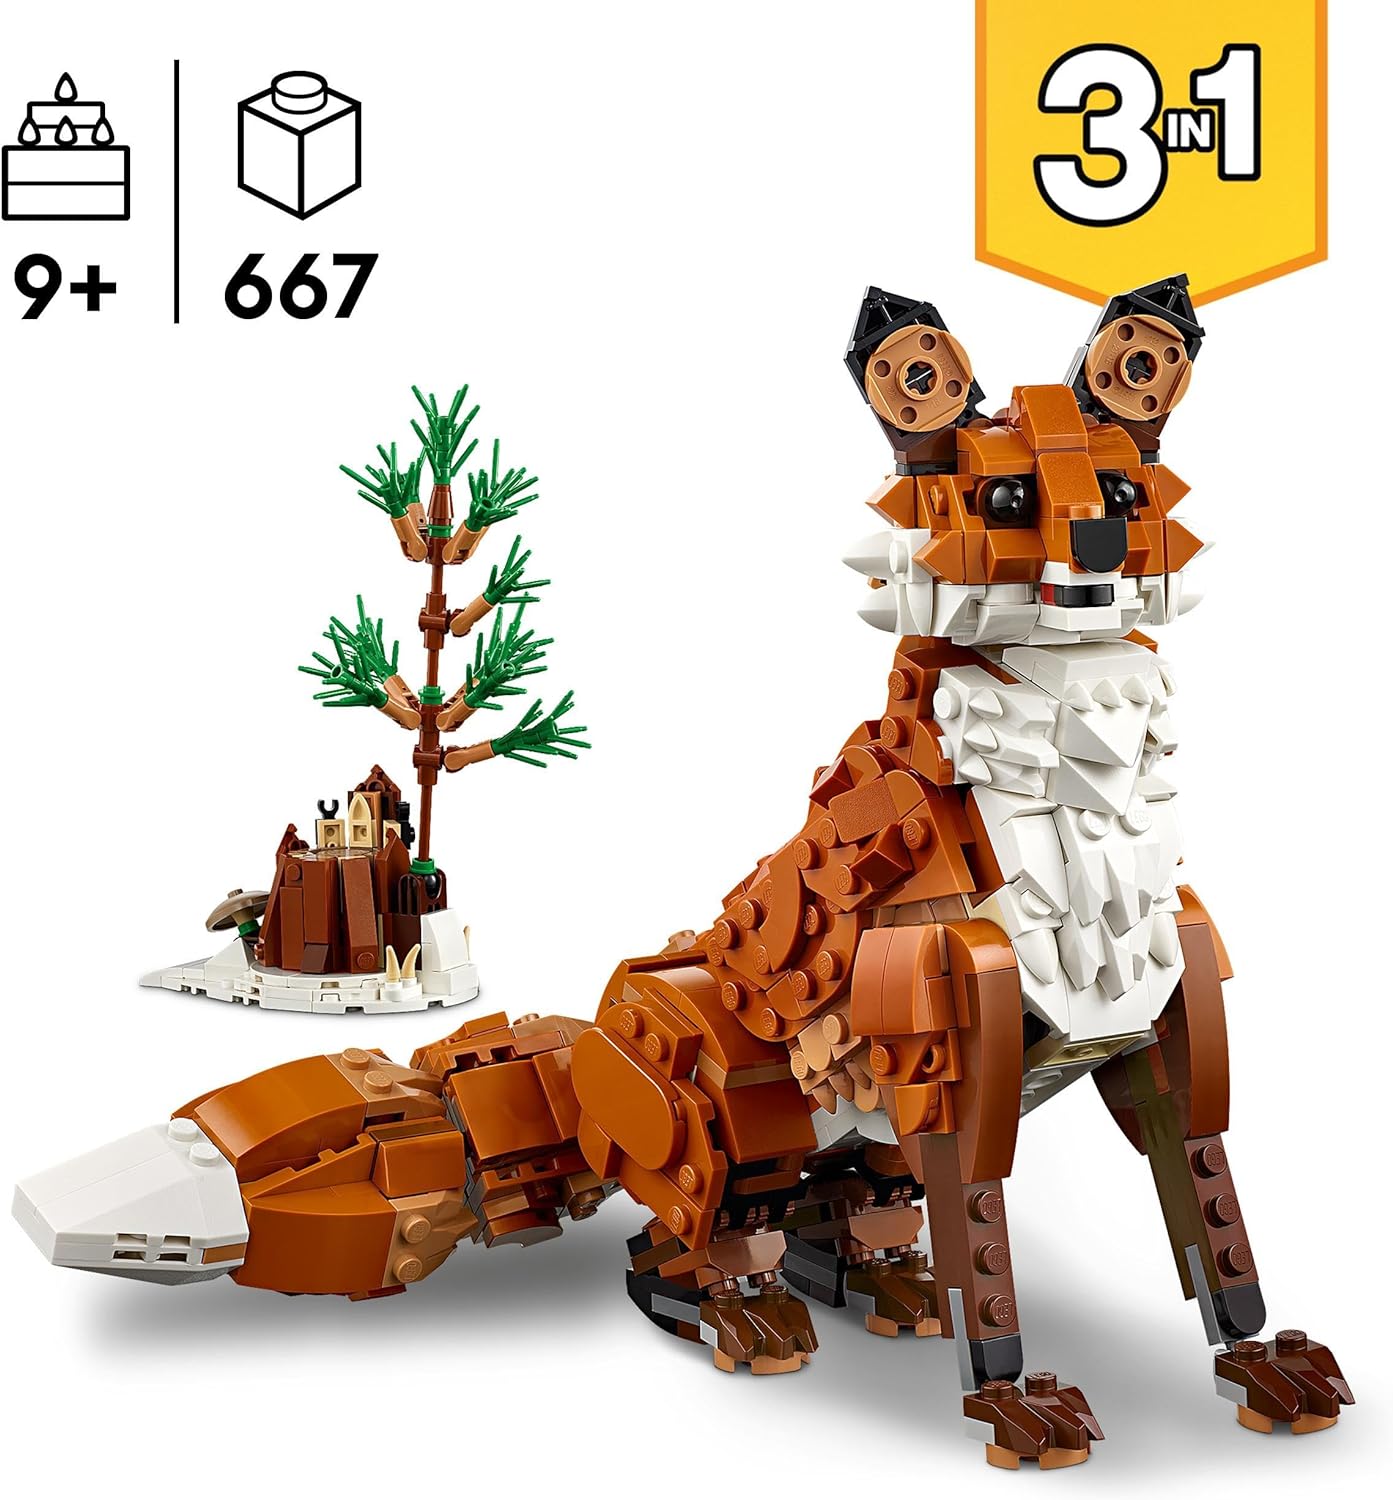 LEGO Criador de animais da floresta 3 em 1: brinquedo de raposa vermelha para figura de coruja para modelo de esquilo, brinquedos de animais da floresta para crianças, meninas e meninos de mais de 9 anos, faz uma decoração divertida de quarto,